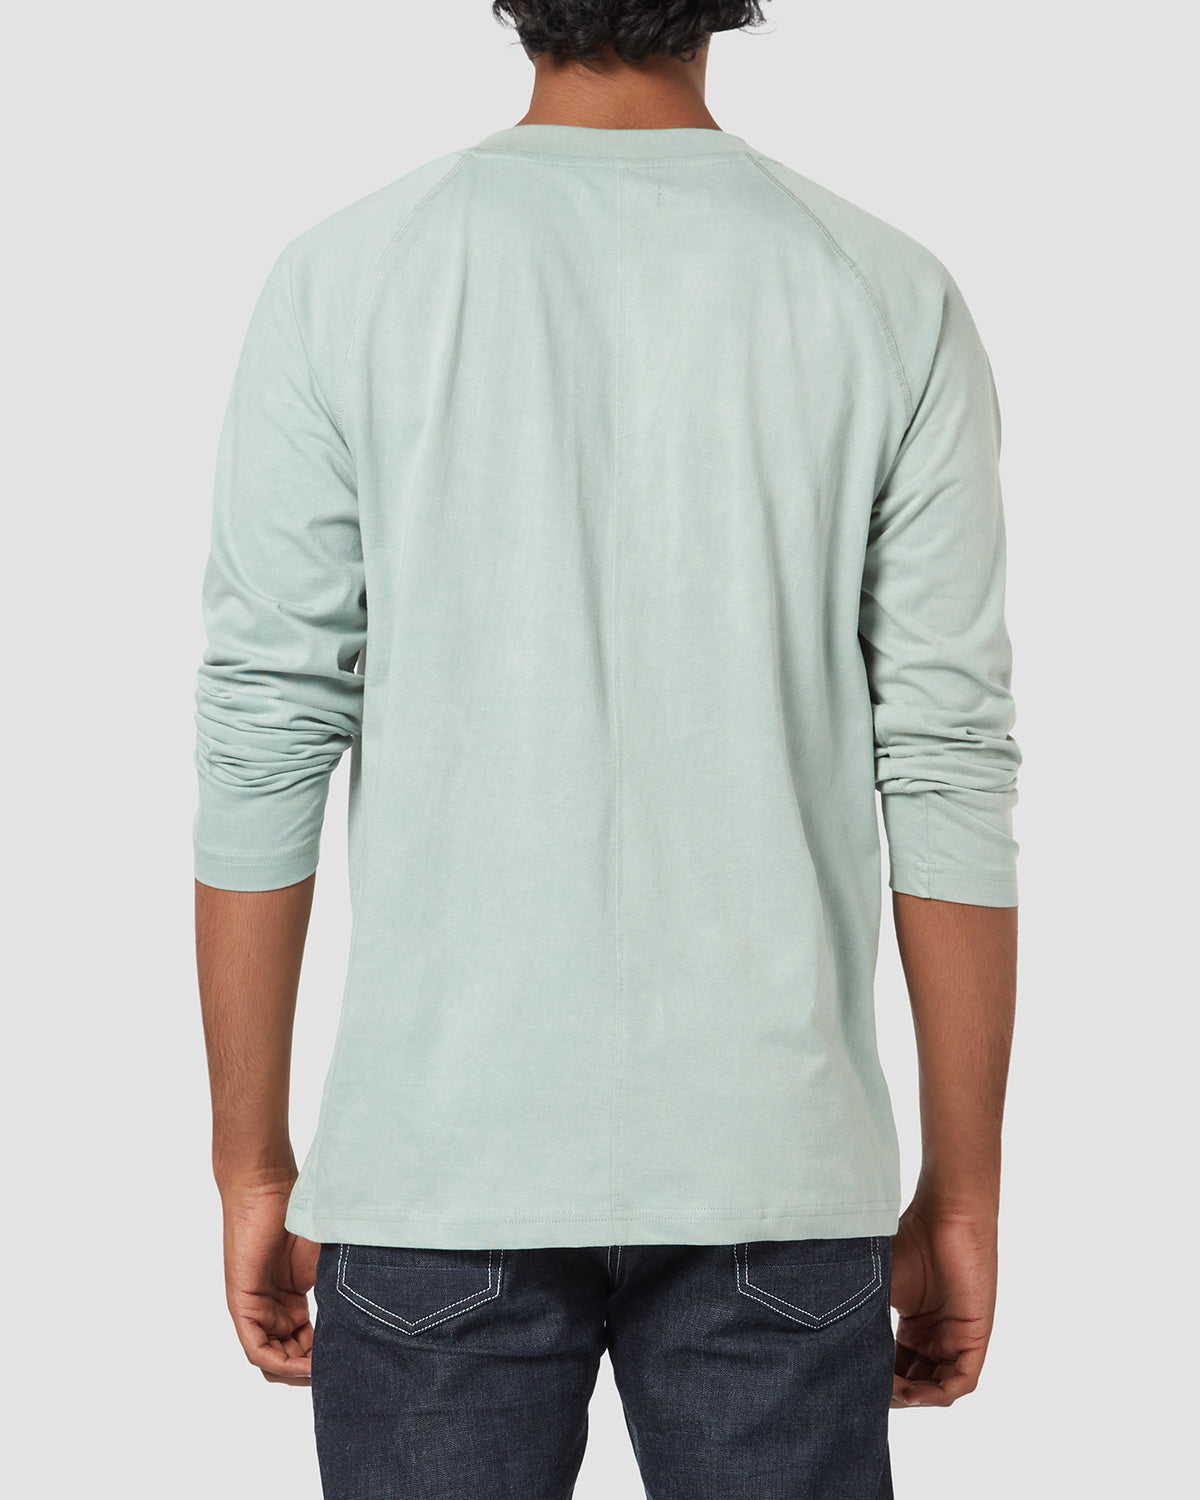 cityof_ - Distressed Raglan Henley Long Sleeve T-Shirt